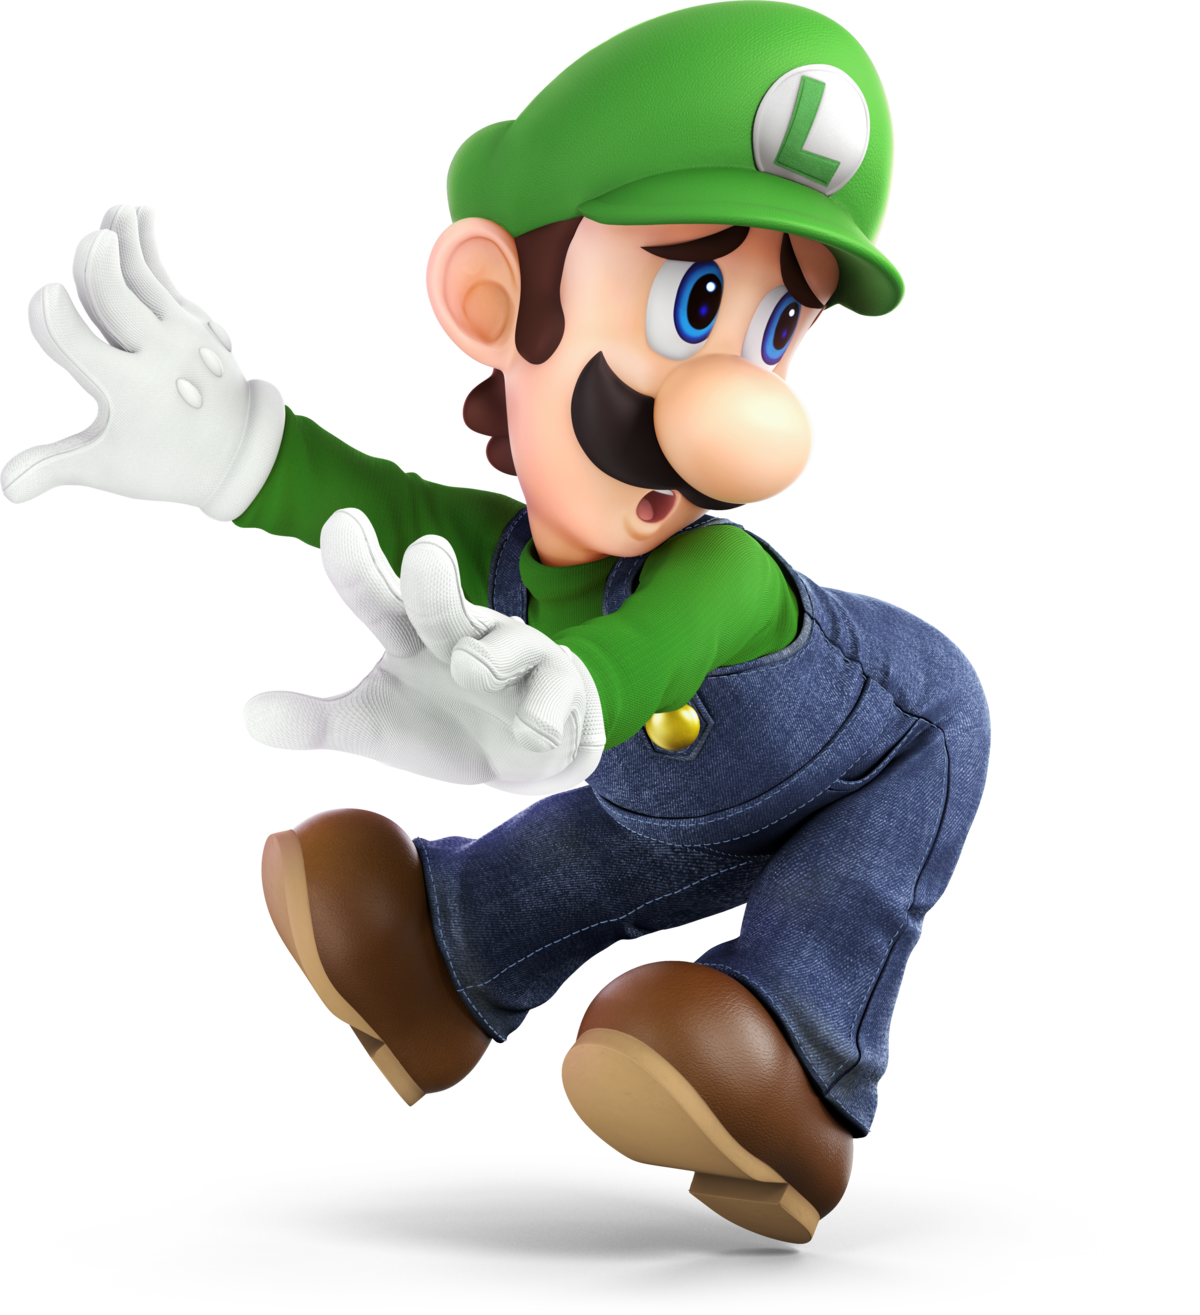 Super Smash Bros Melee Mario Vs Luigi